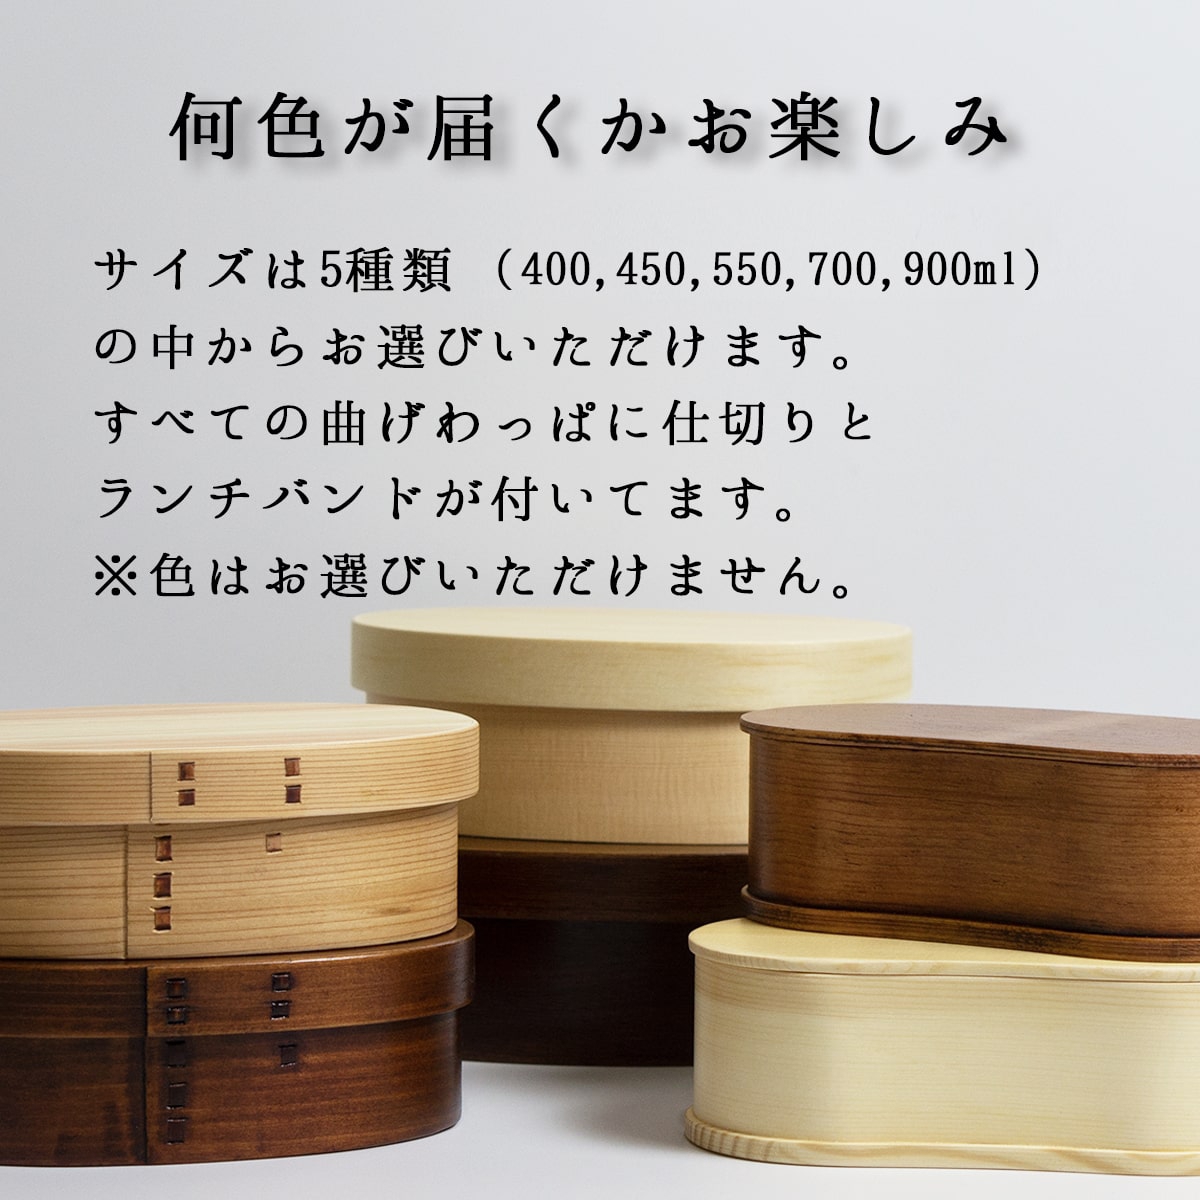 うるしギャラリー久右衛門(urushi gallery kyuuemon) お試し曲げわっぱ 弁当箱 一段 700mlの商品画像4 